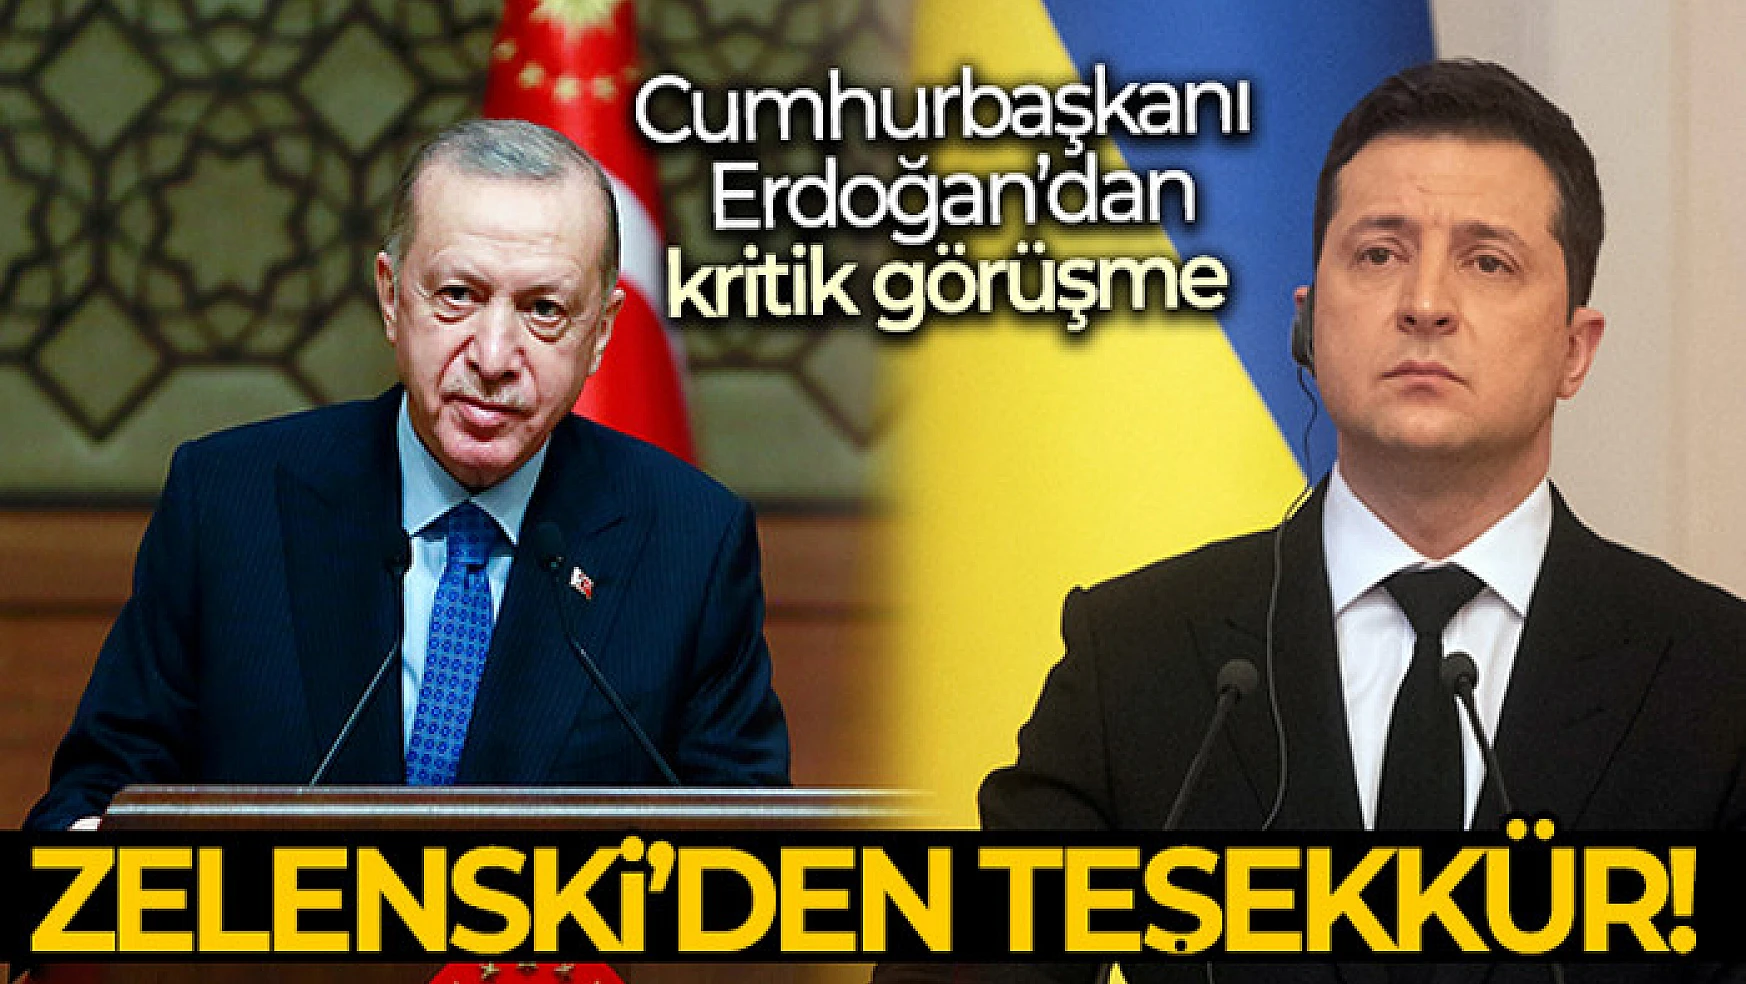 Cumhurbaşkanı Erdoğan, Zelenskiy ile görüştü!